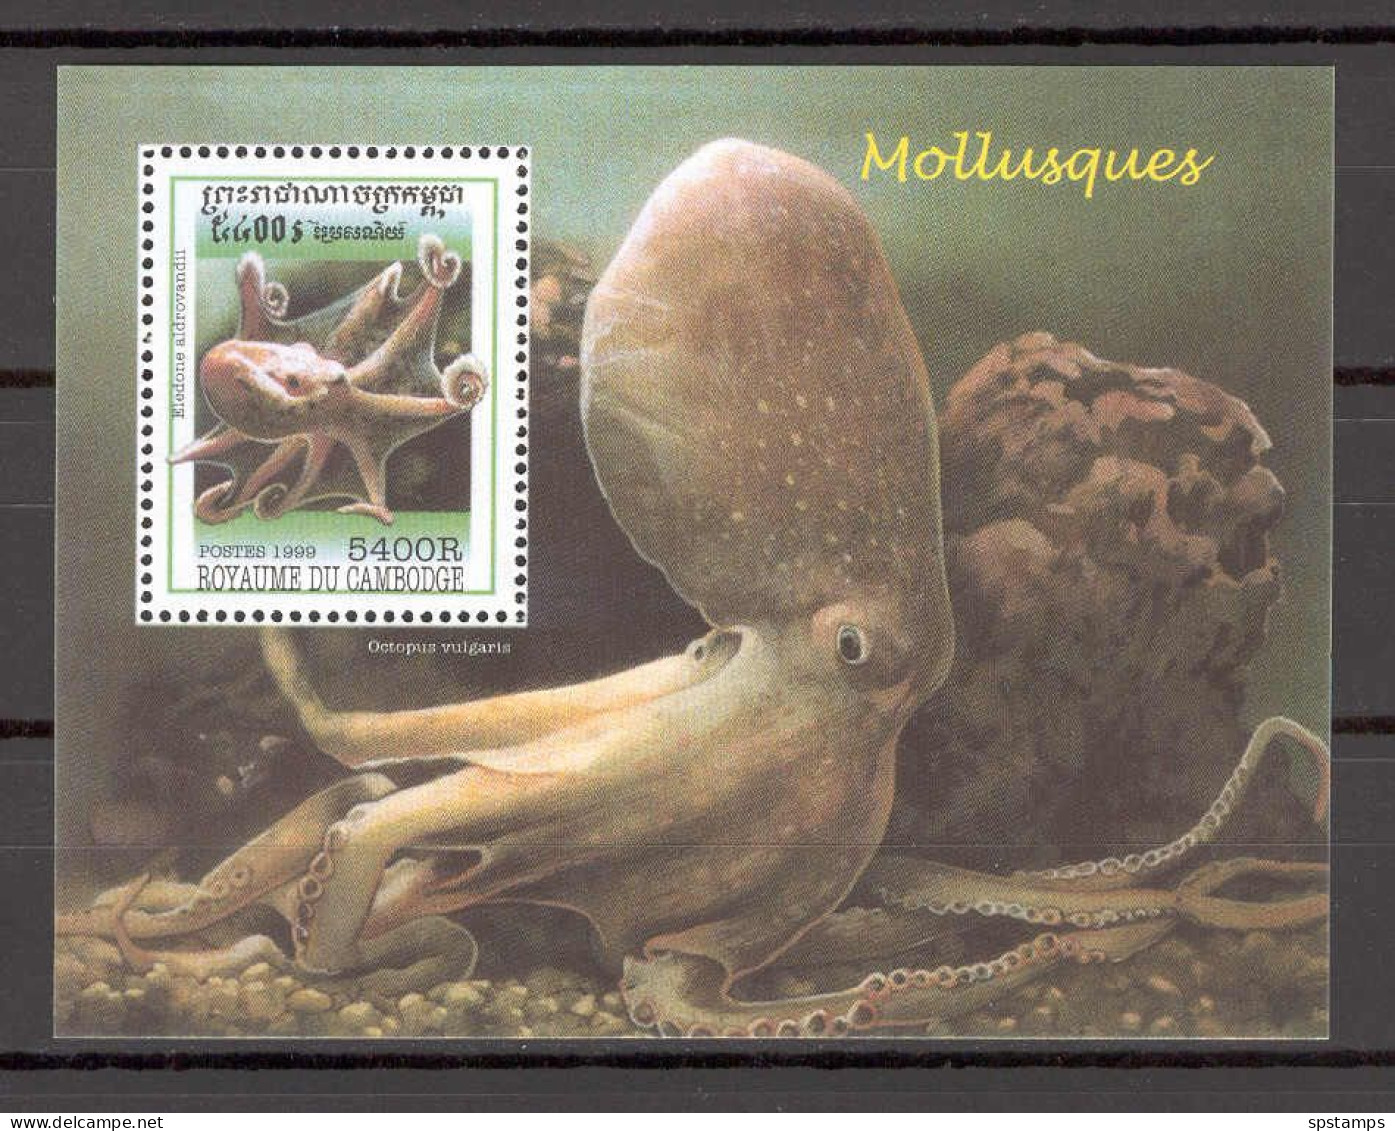 Cambodia 1999 Marine Life - Octopus MS MNH - Cambodia